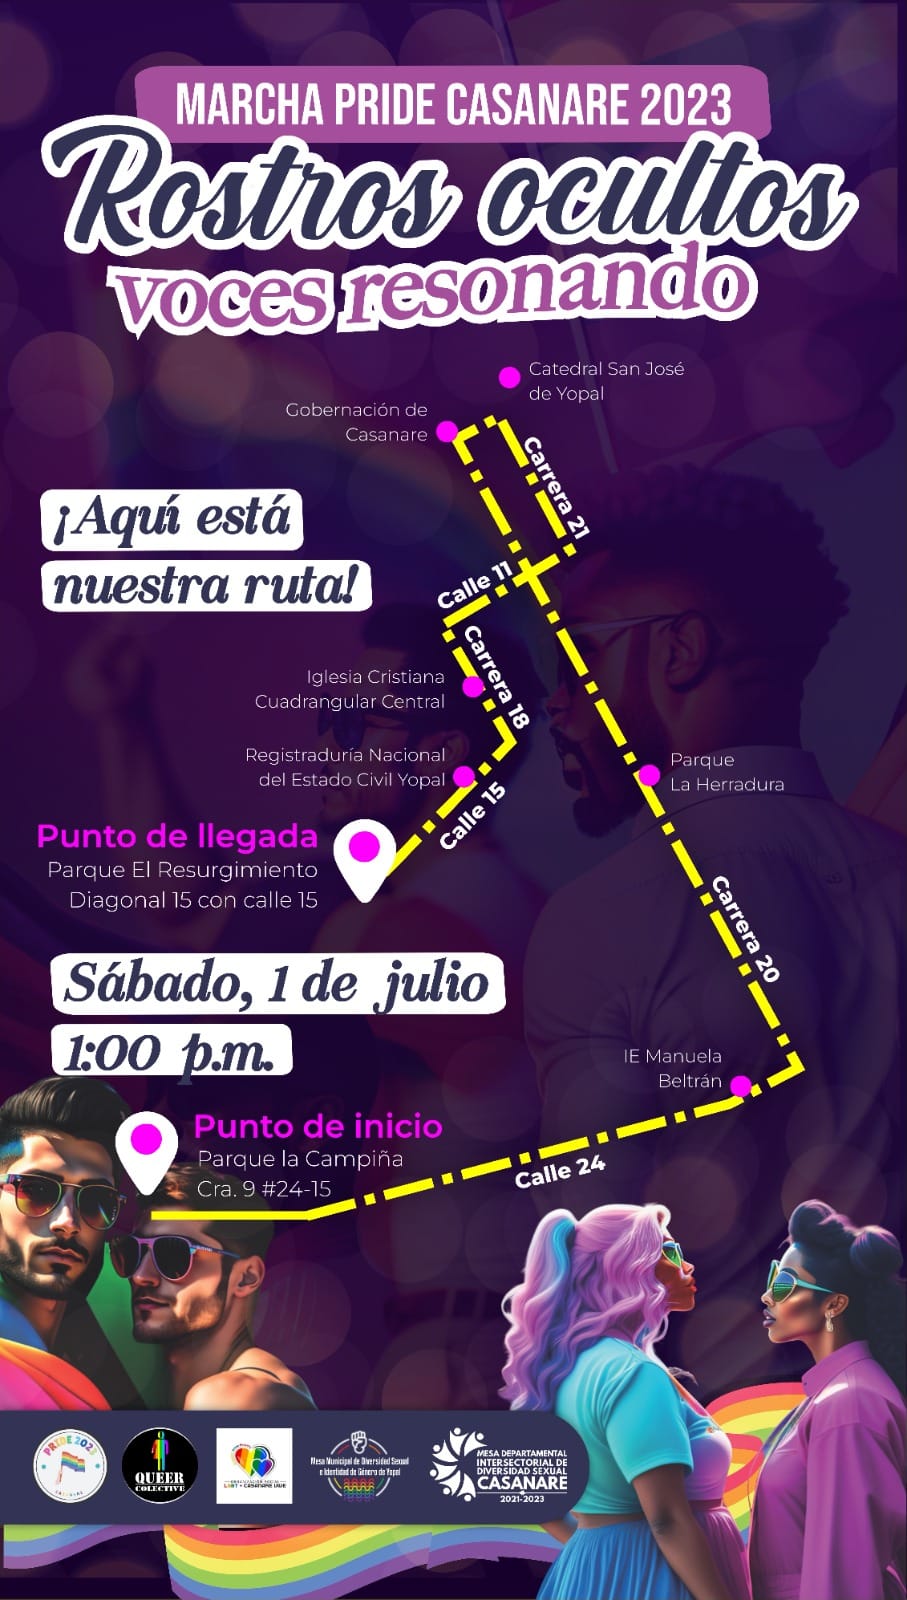 6 Marcha Pride Casanare 2023